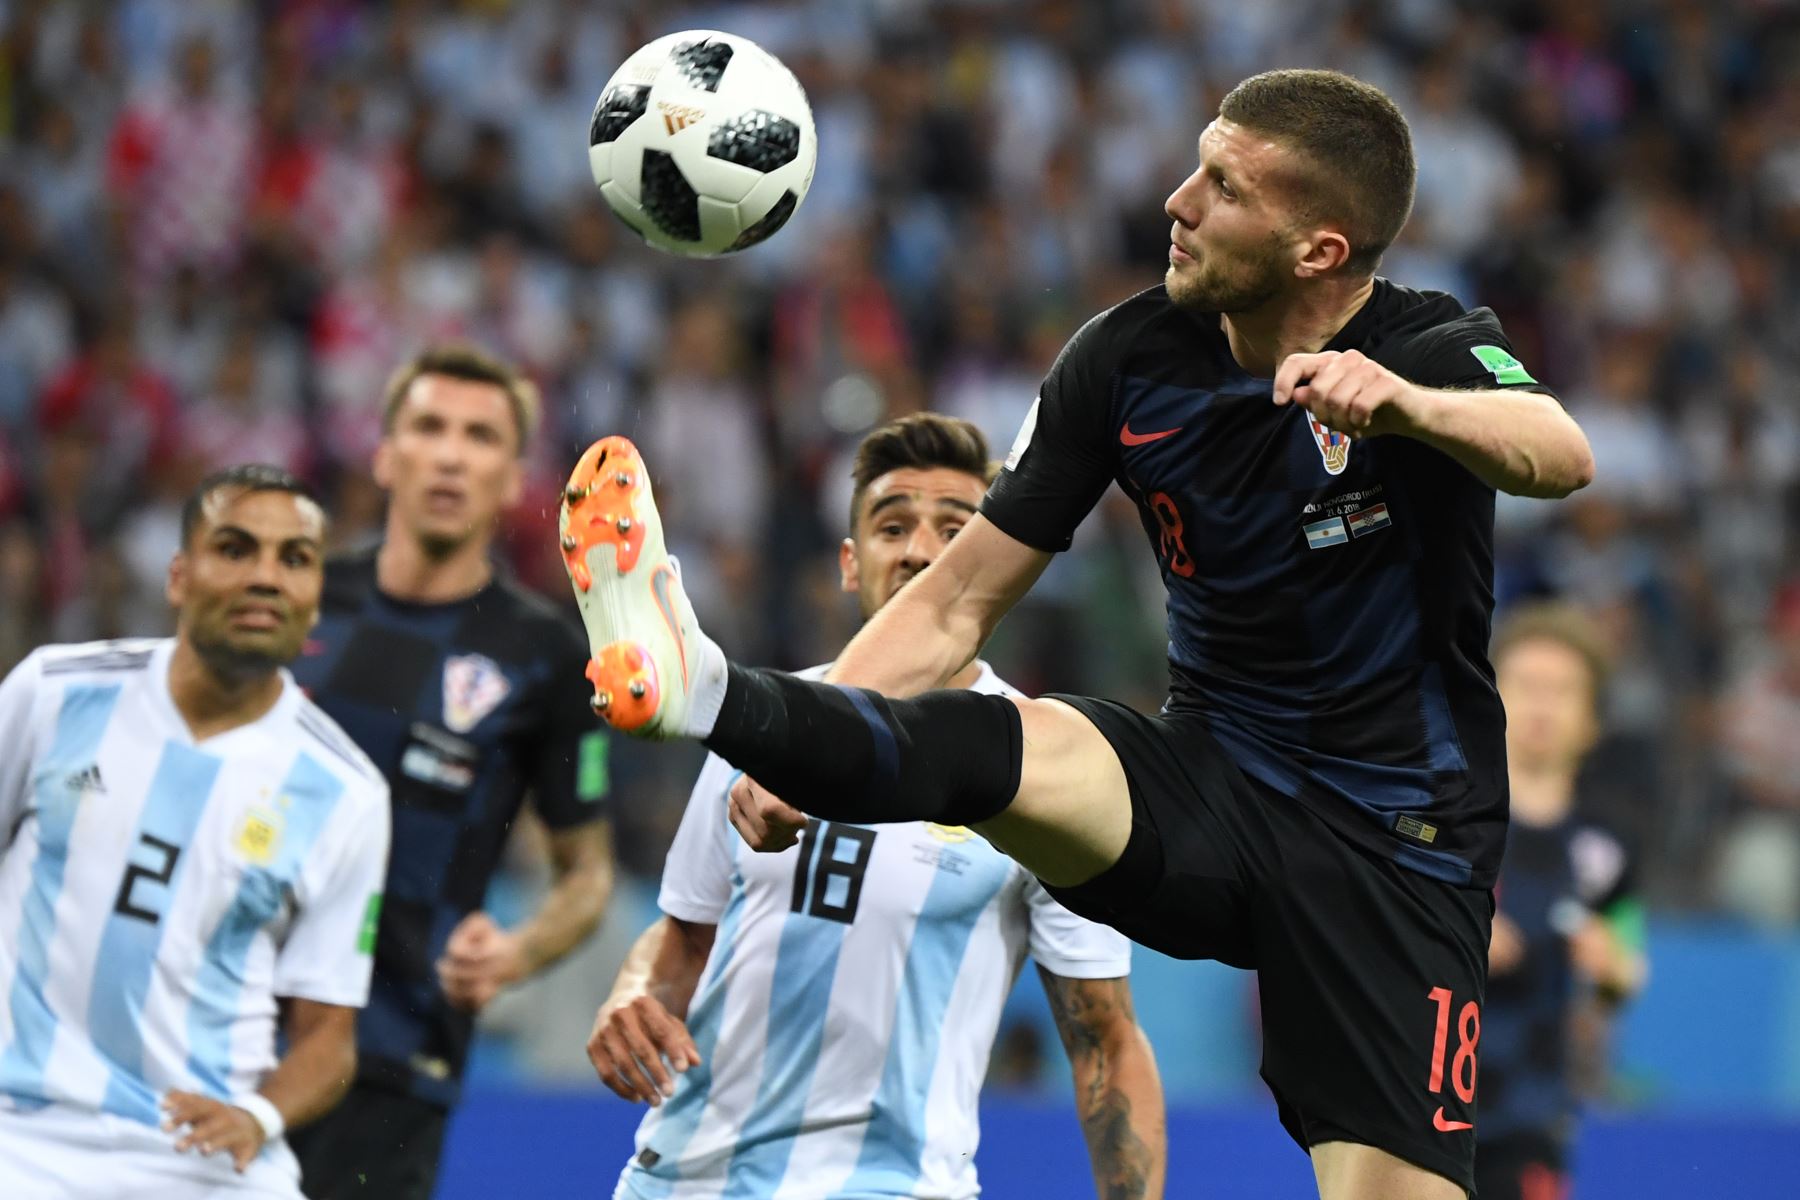 El delantero Ante Rebic de Croacia controla el balón durante el partido de fútbol del Grupo D de la Copa Mundial Rusia 2018 entre Argentina y Croacia en el Estadio Nizhny Novgorod en Nizhny Novgorod el 21 de junio de 2018.
/ AFP